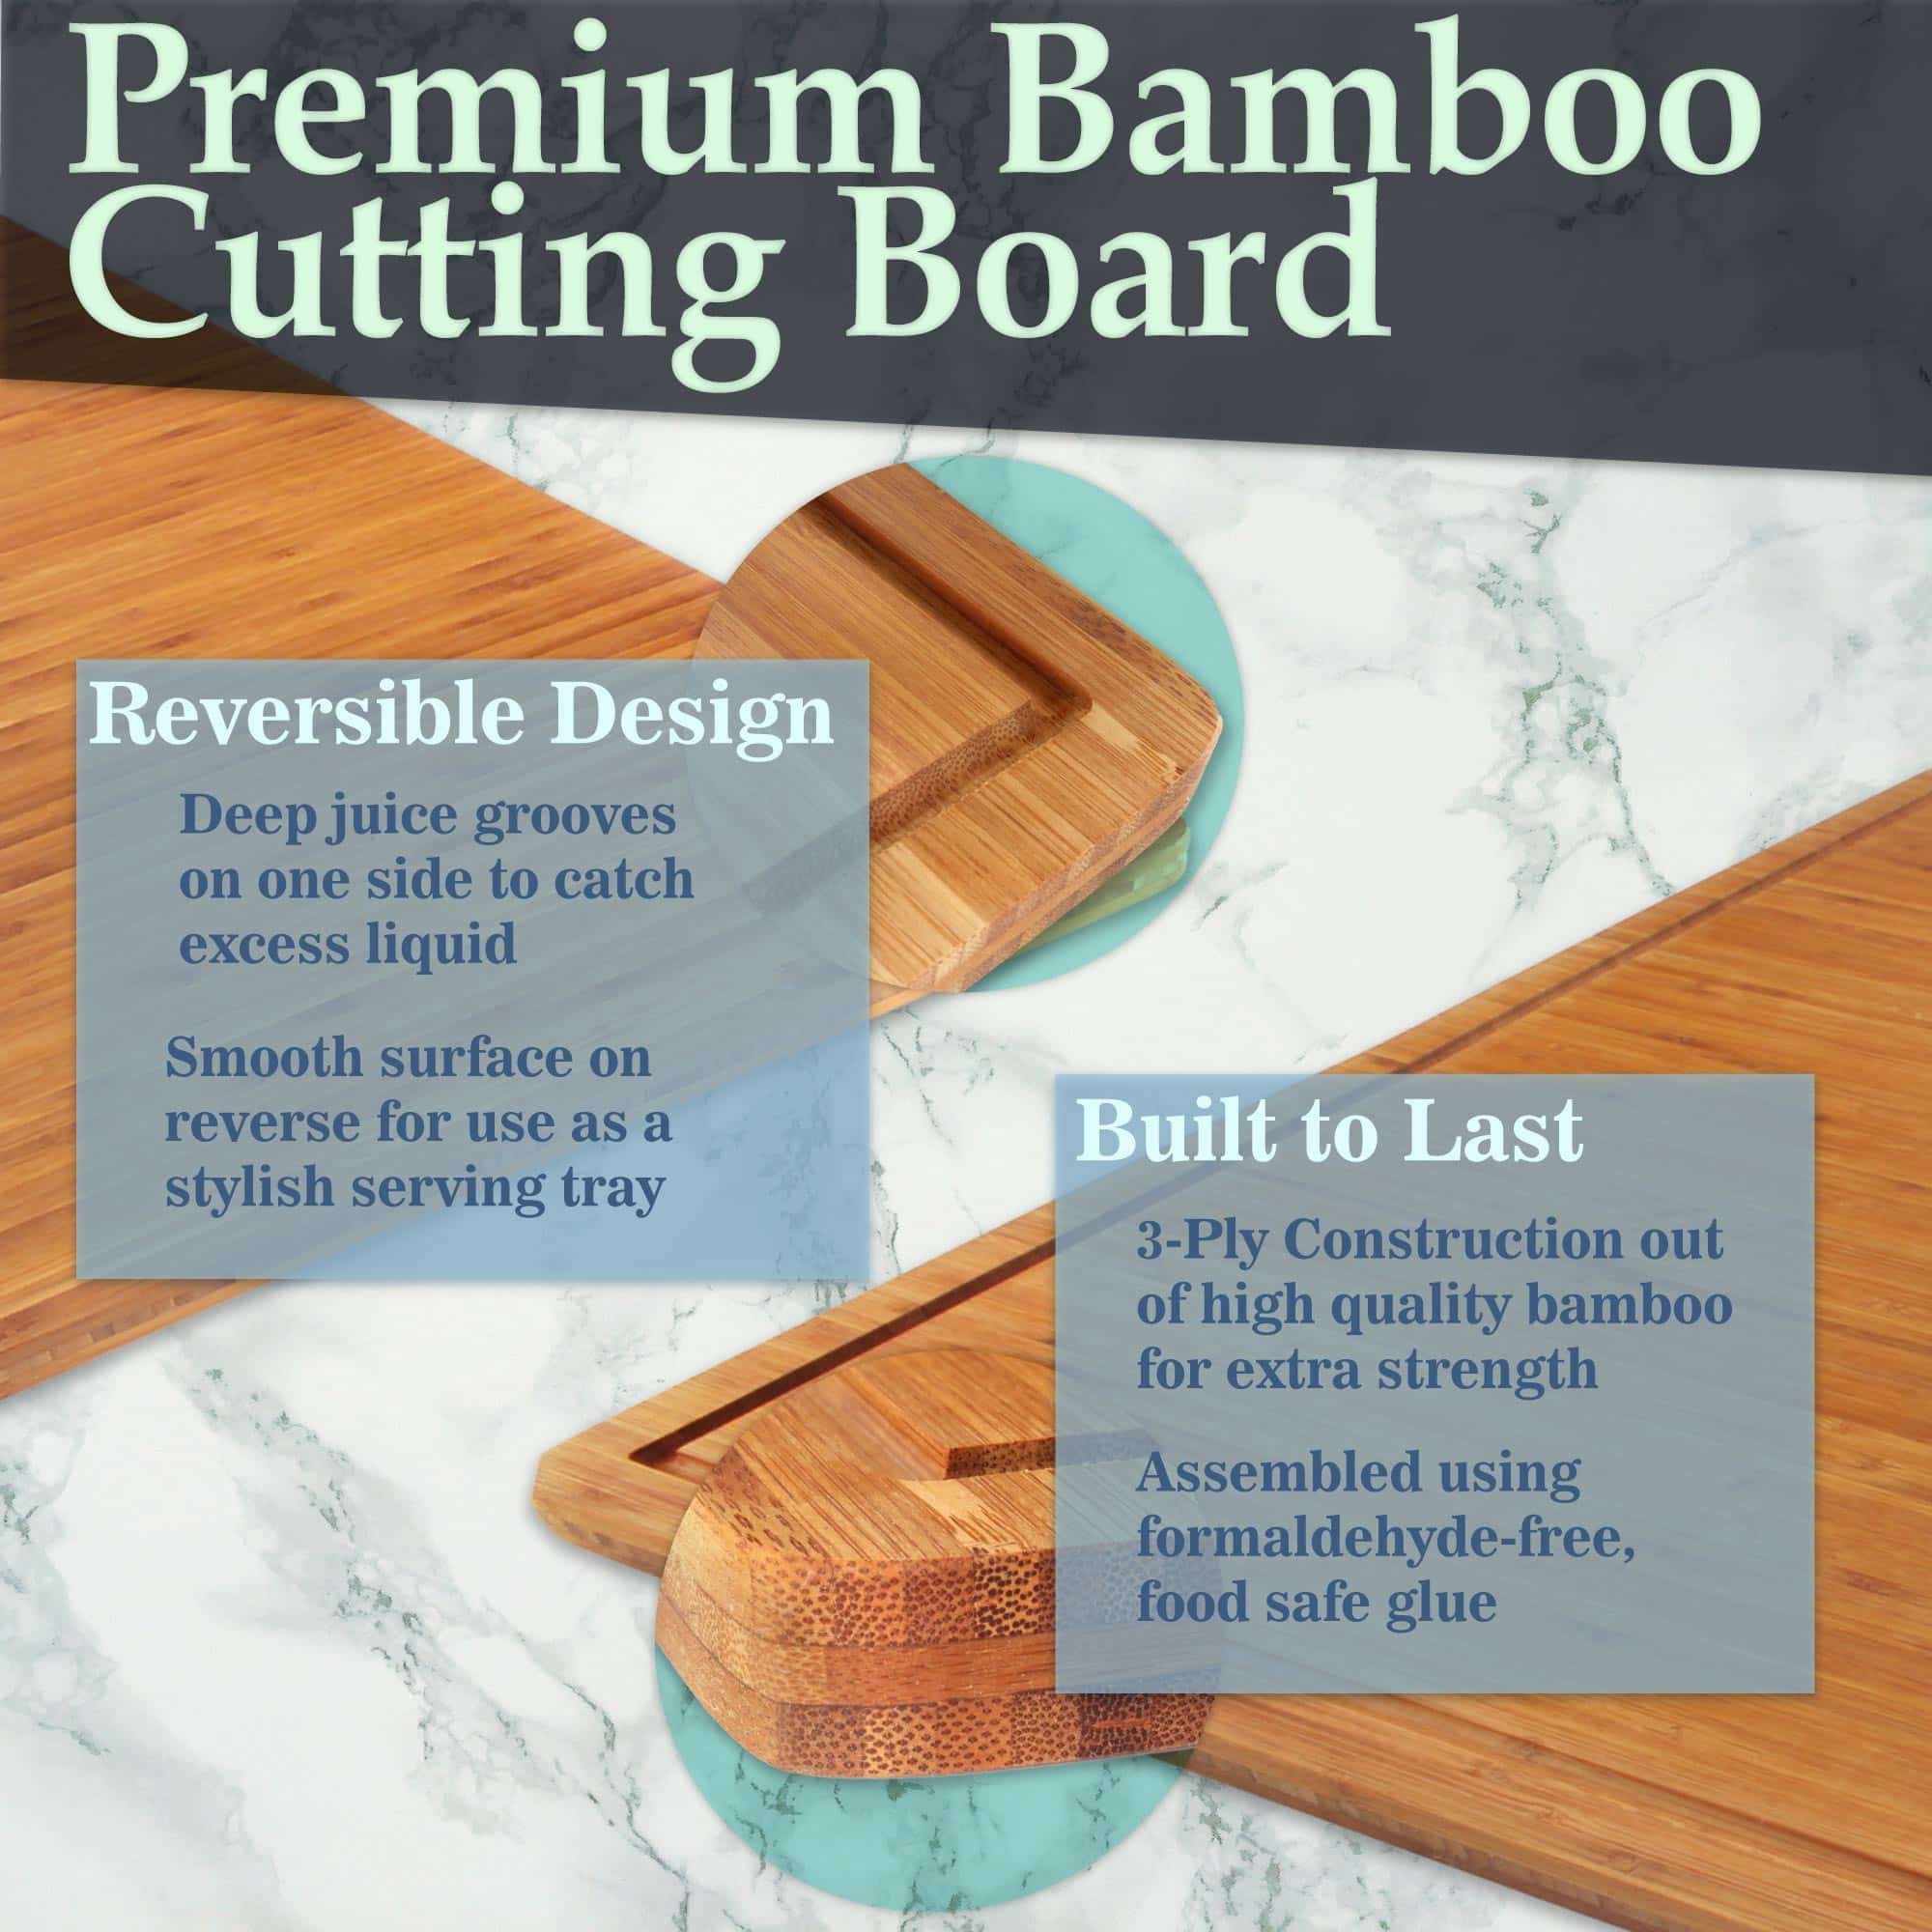 Kona Thin Cutting Board - Bamboo